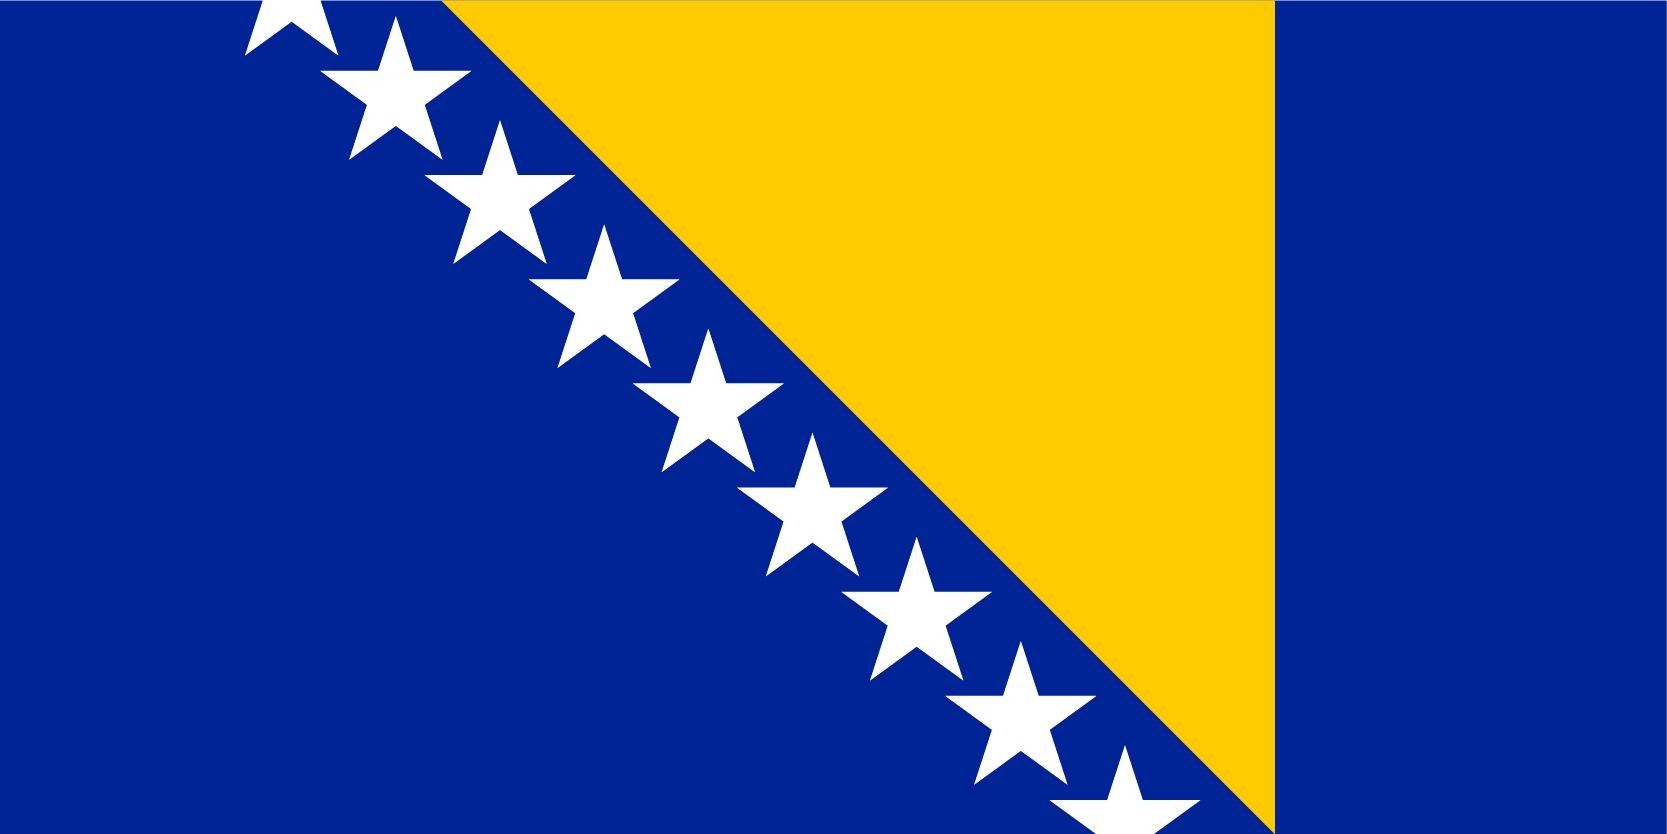 Flag_of_Bosnia_and_Herzegovina-01.jpg